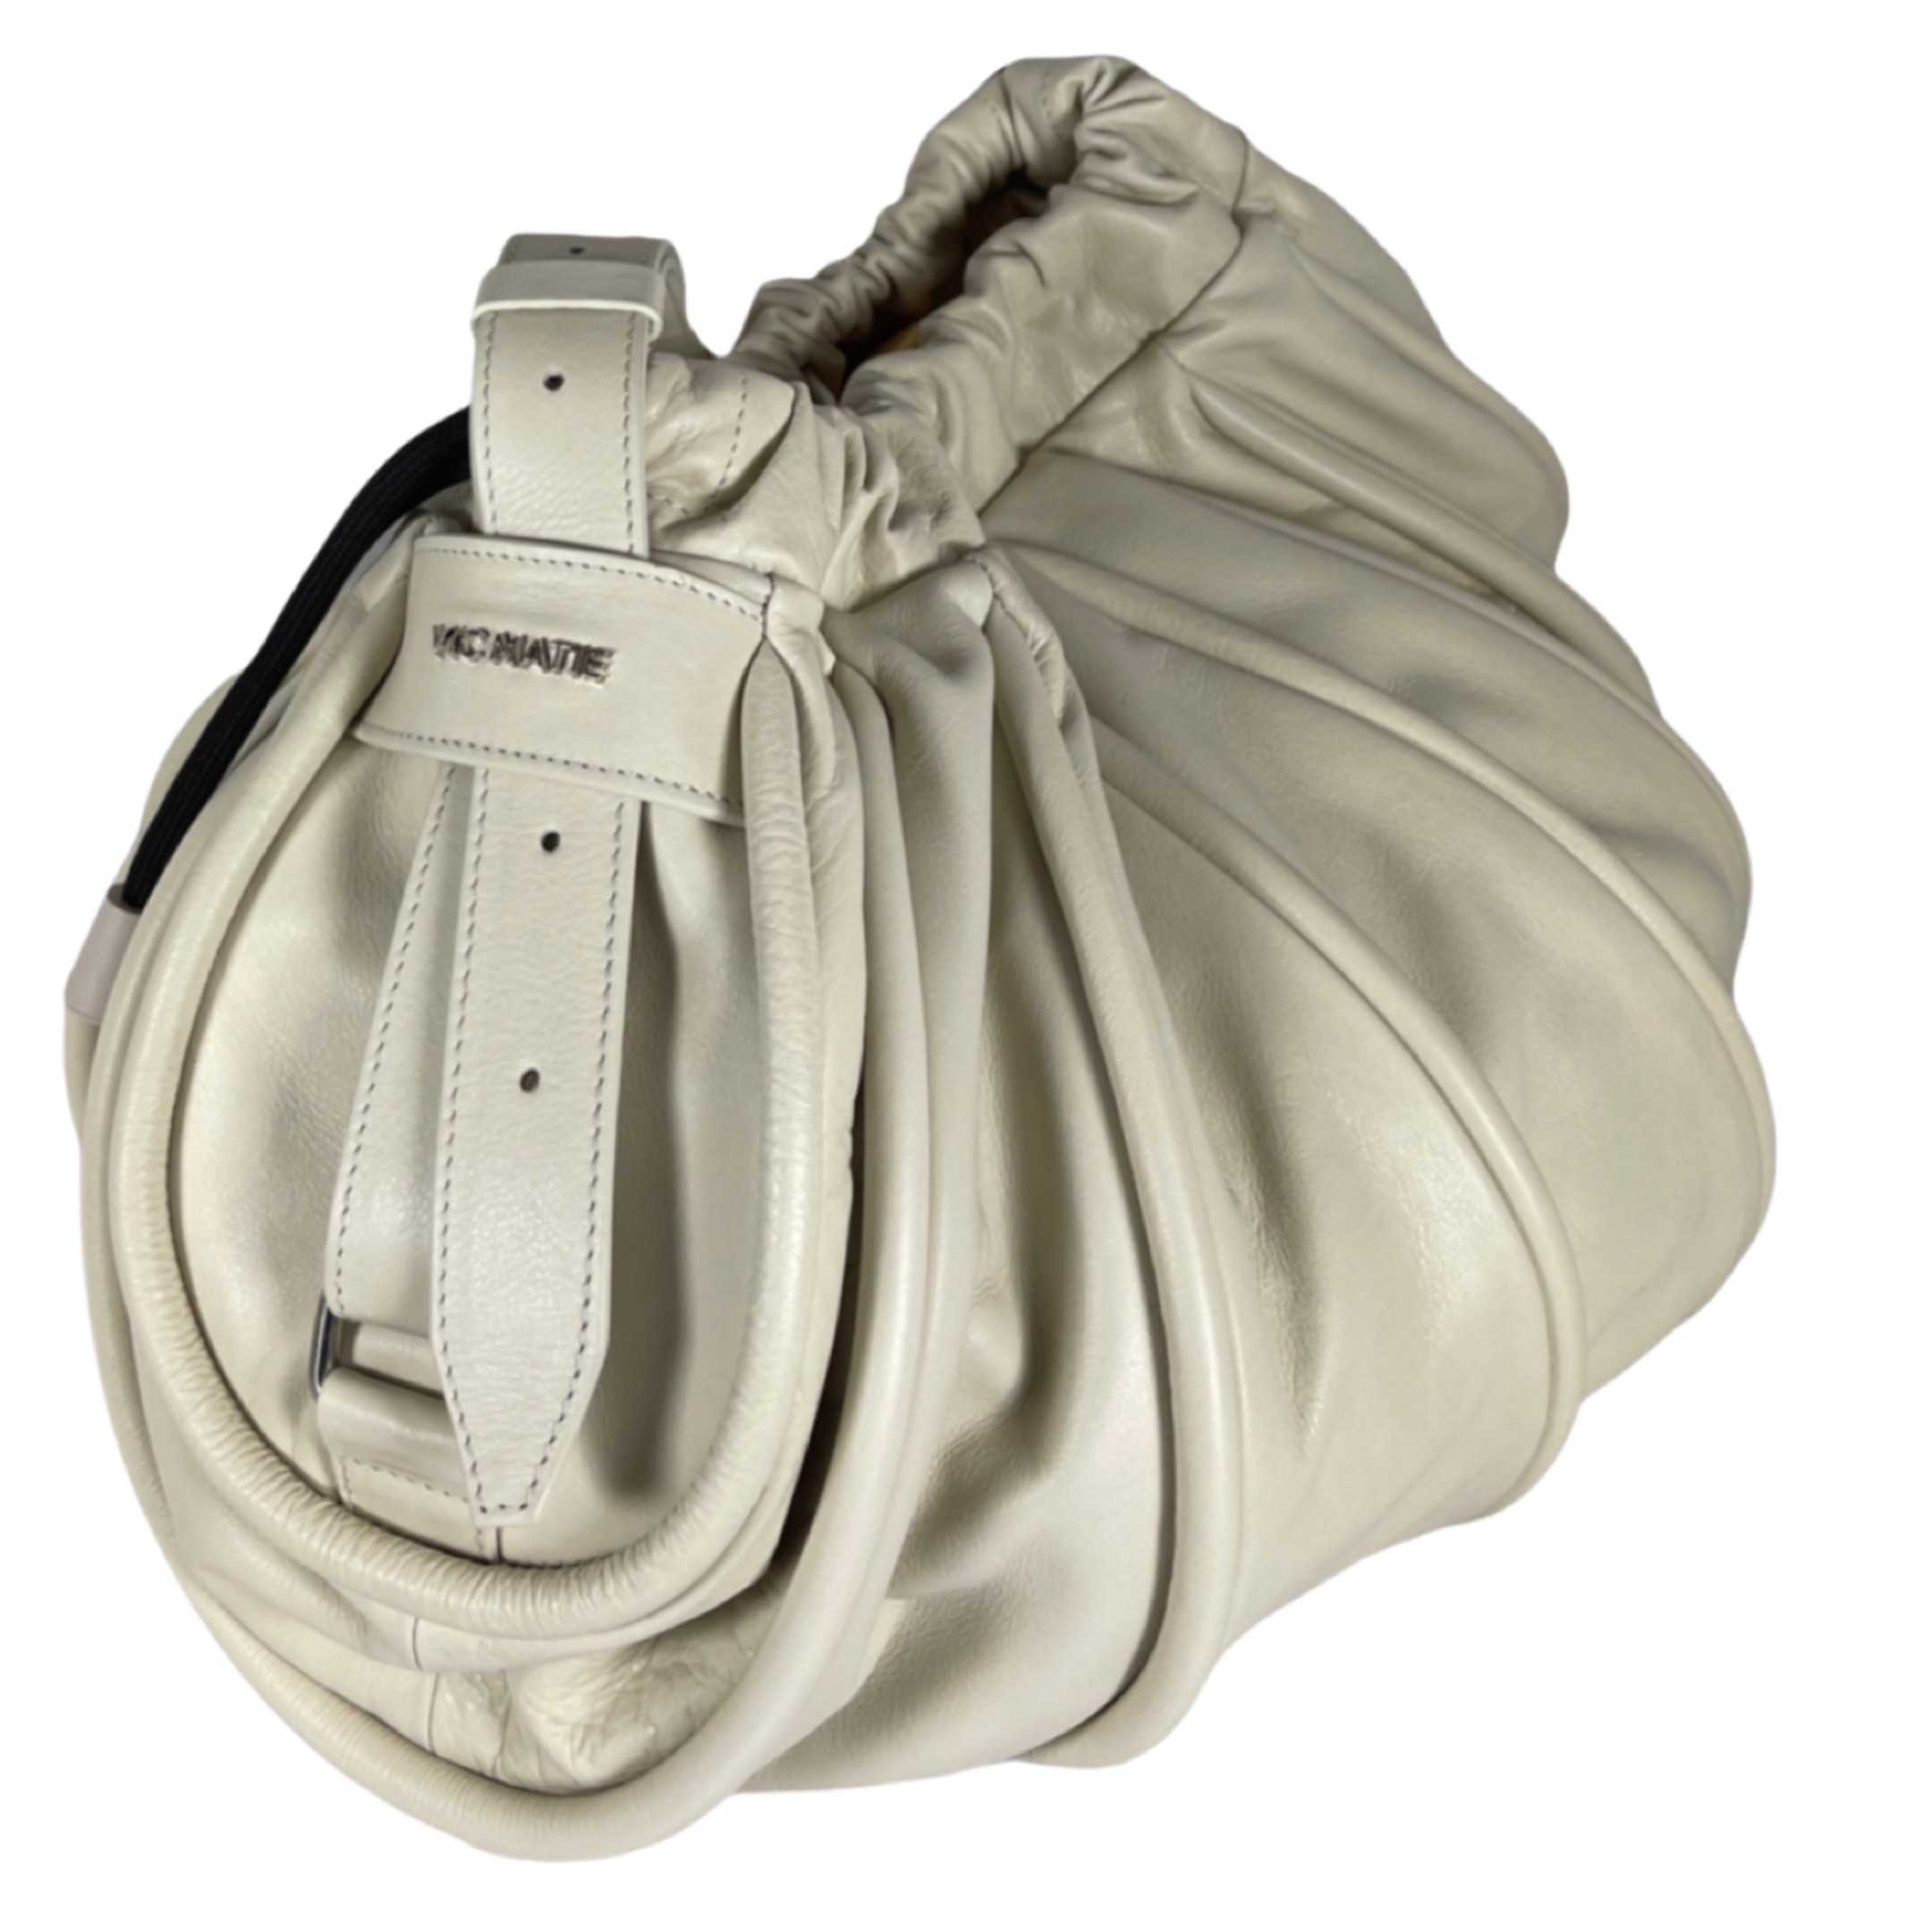 VIC MATIE  0222 TRAVEL Leder Handtasche Off-White